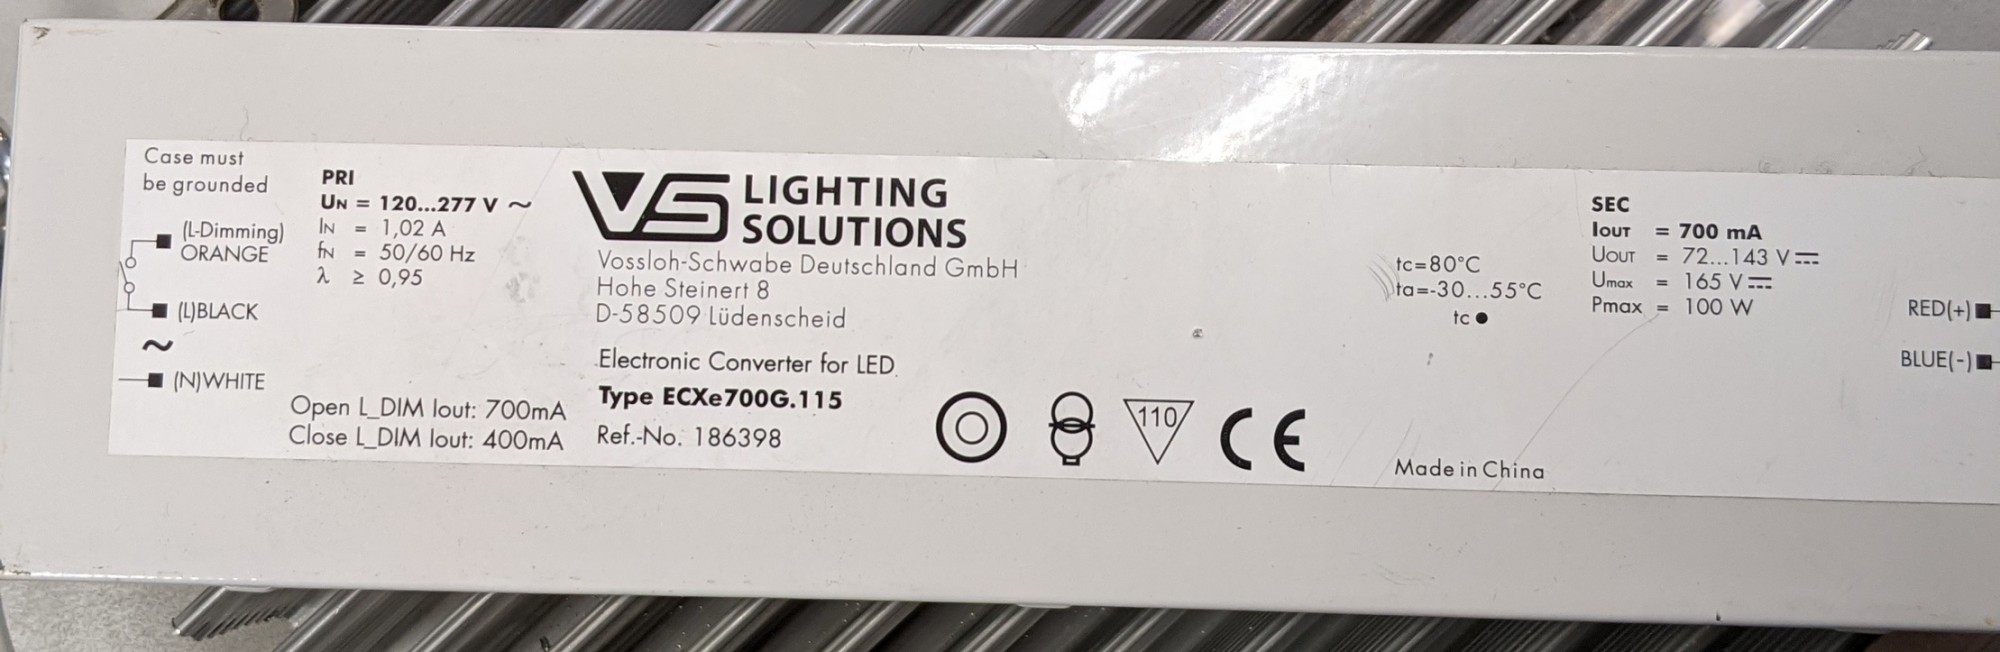 LED светильник для растений Philips 120CR